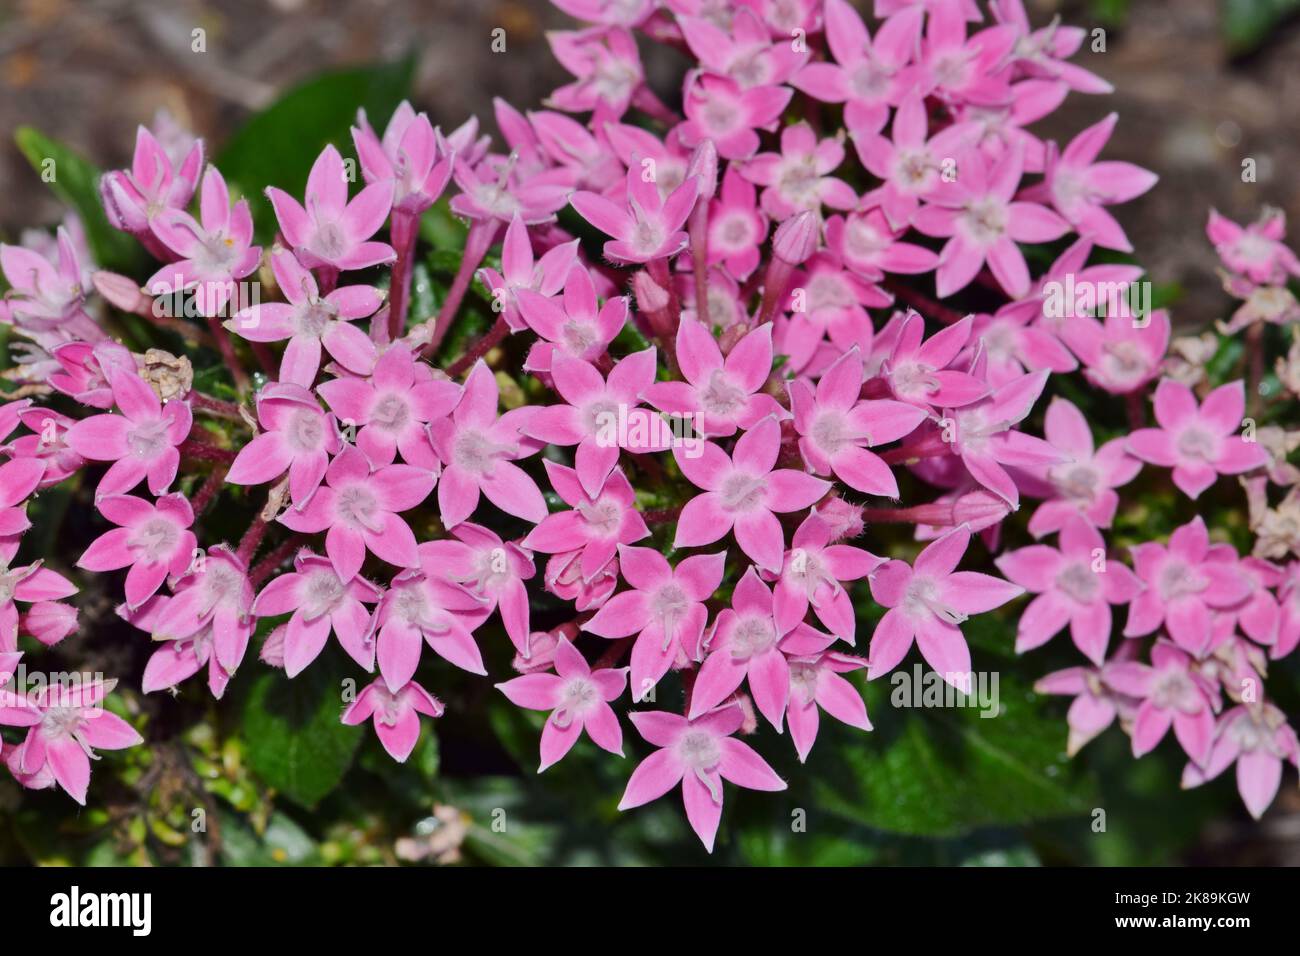 Rosa stellare egiziano (Pentas lanceolata) fiori fiorire in un letto da giardino. Pianta fiorita africana nella famiglia Madder Rubiaceae. Foto Stock